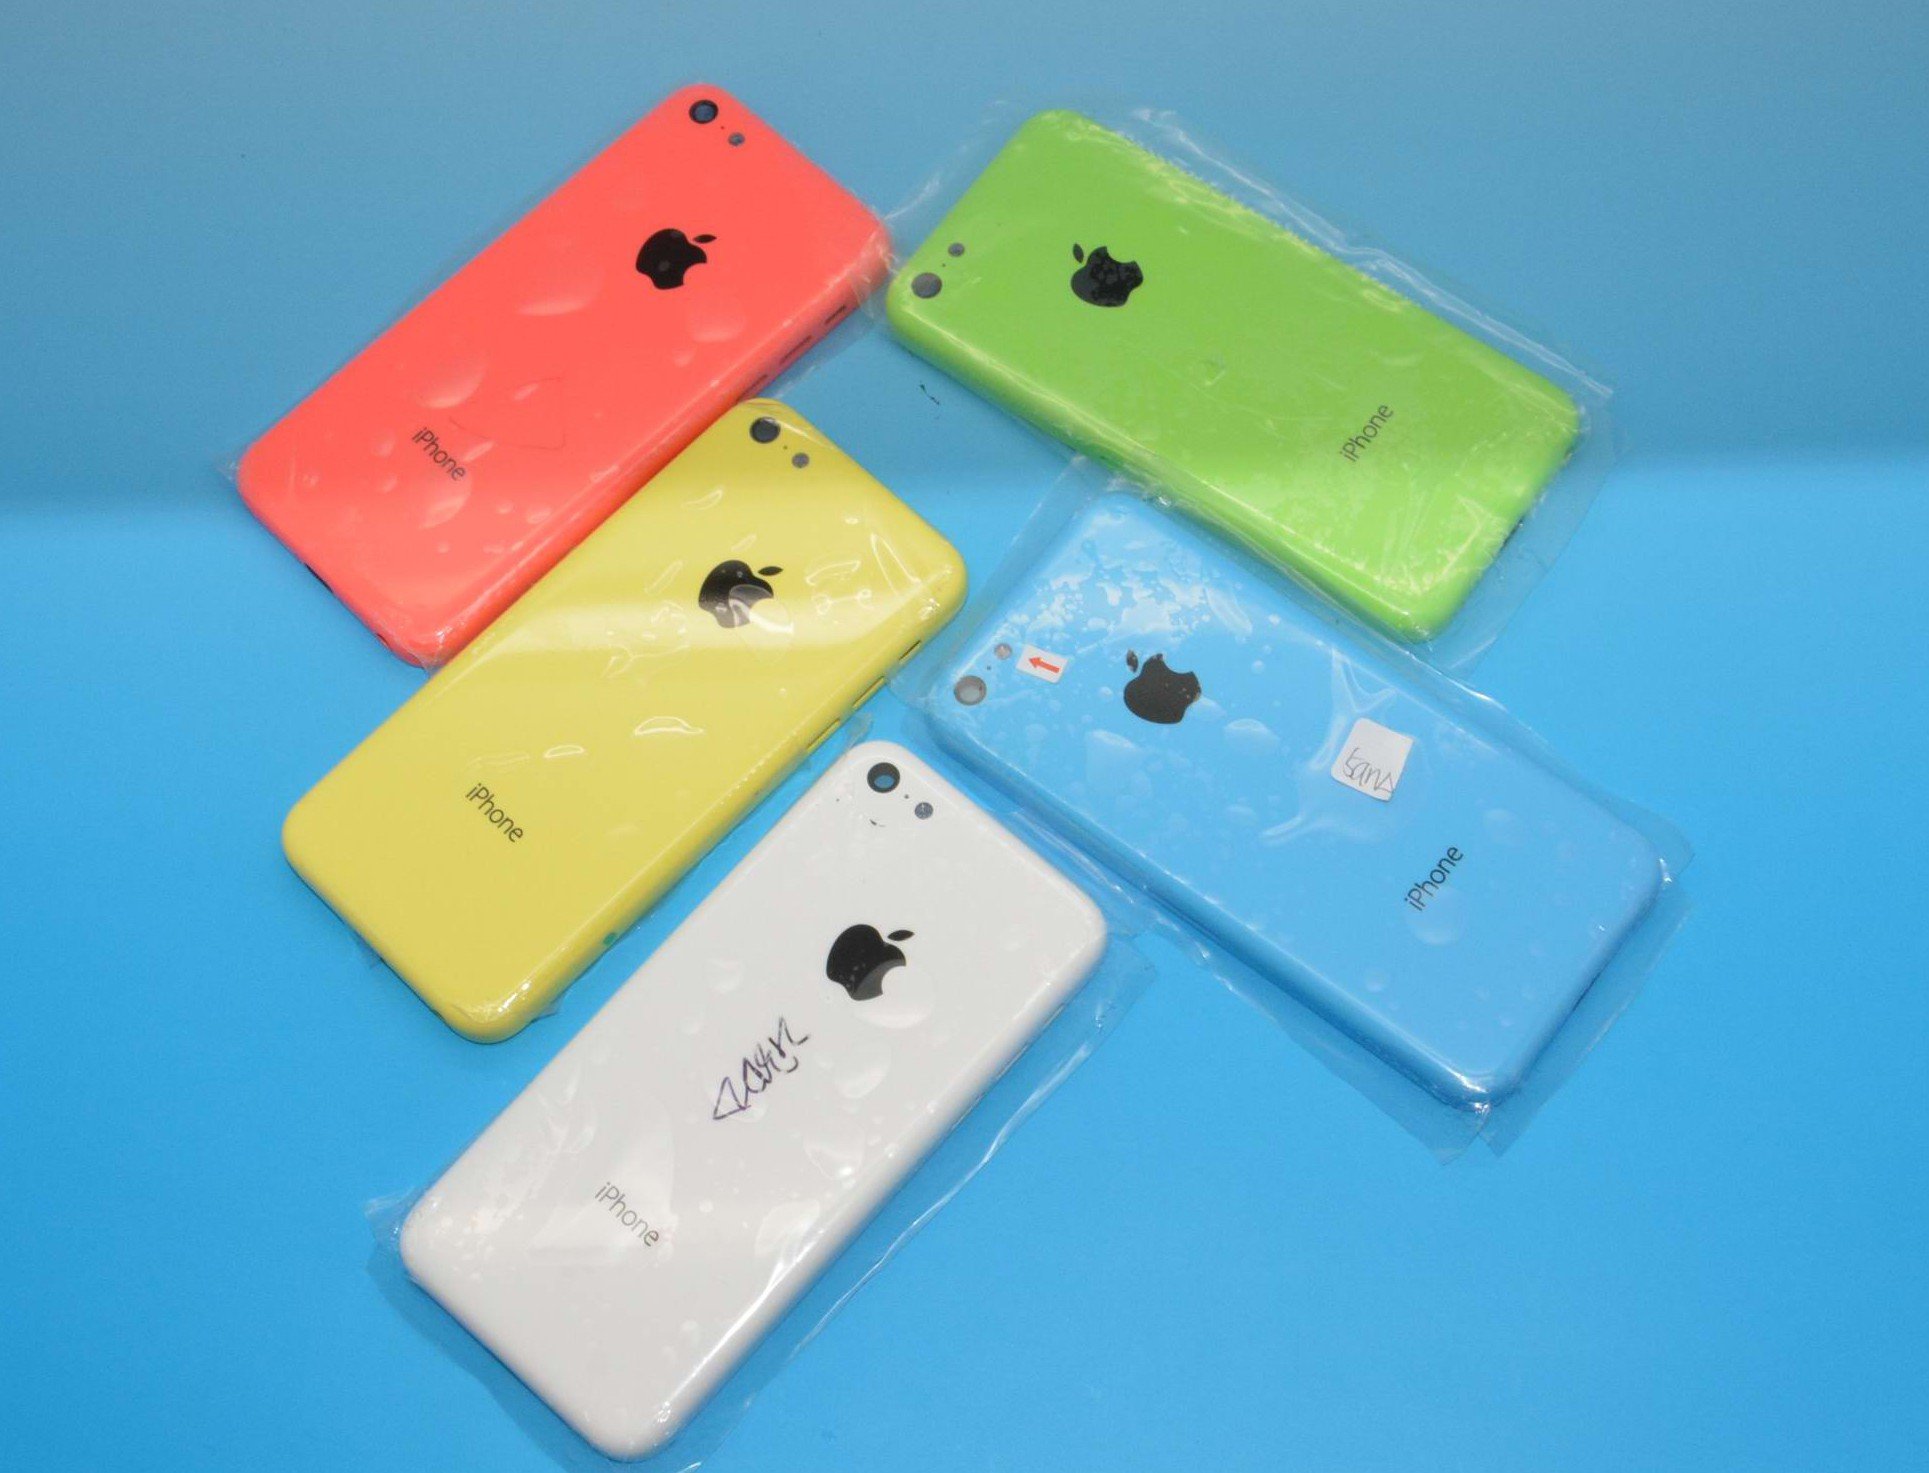 Fotos iPhone 5C: alle Farben, kein schwarz? 1